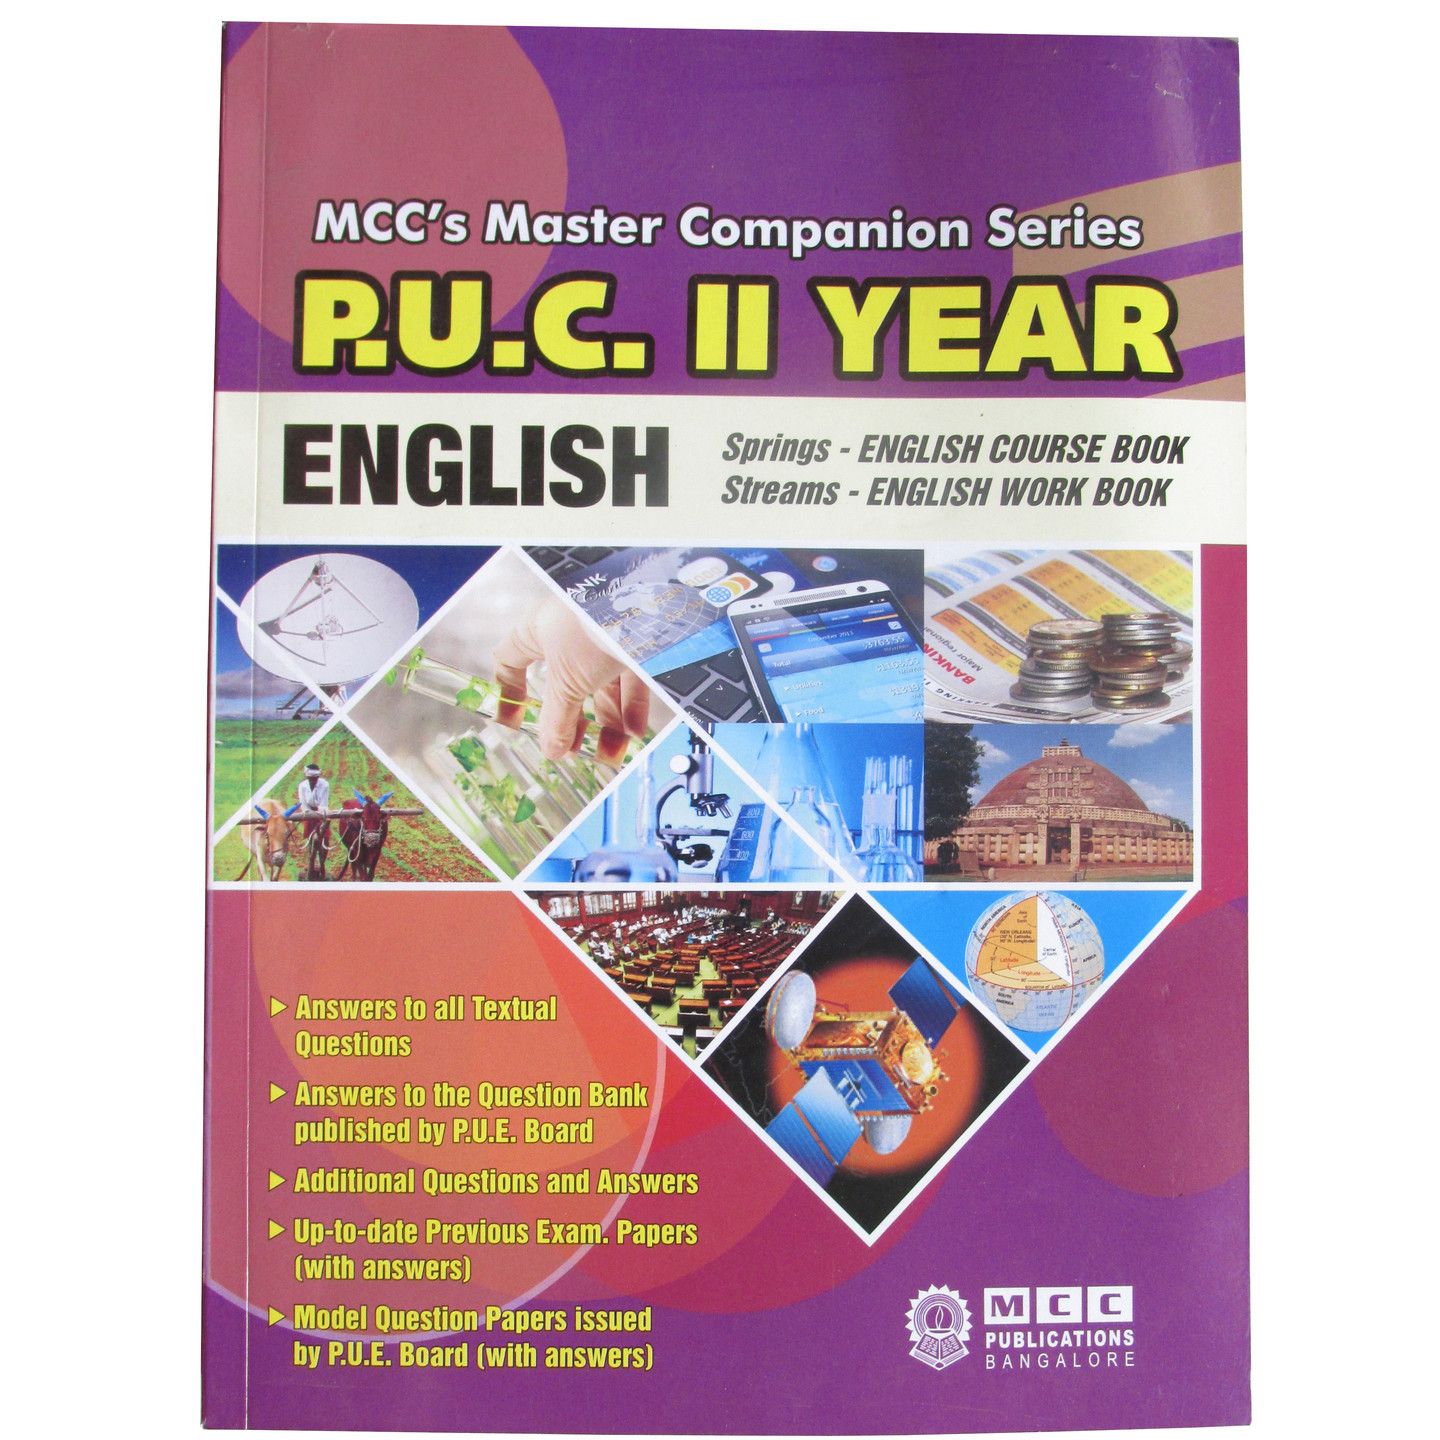 Karnataka 2nd PUC MCC ENGLISH Study Guide with Question Bank